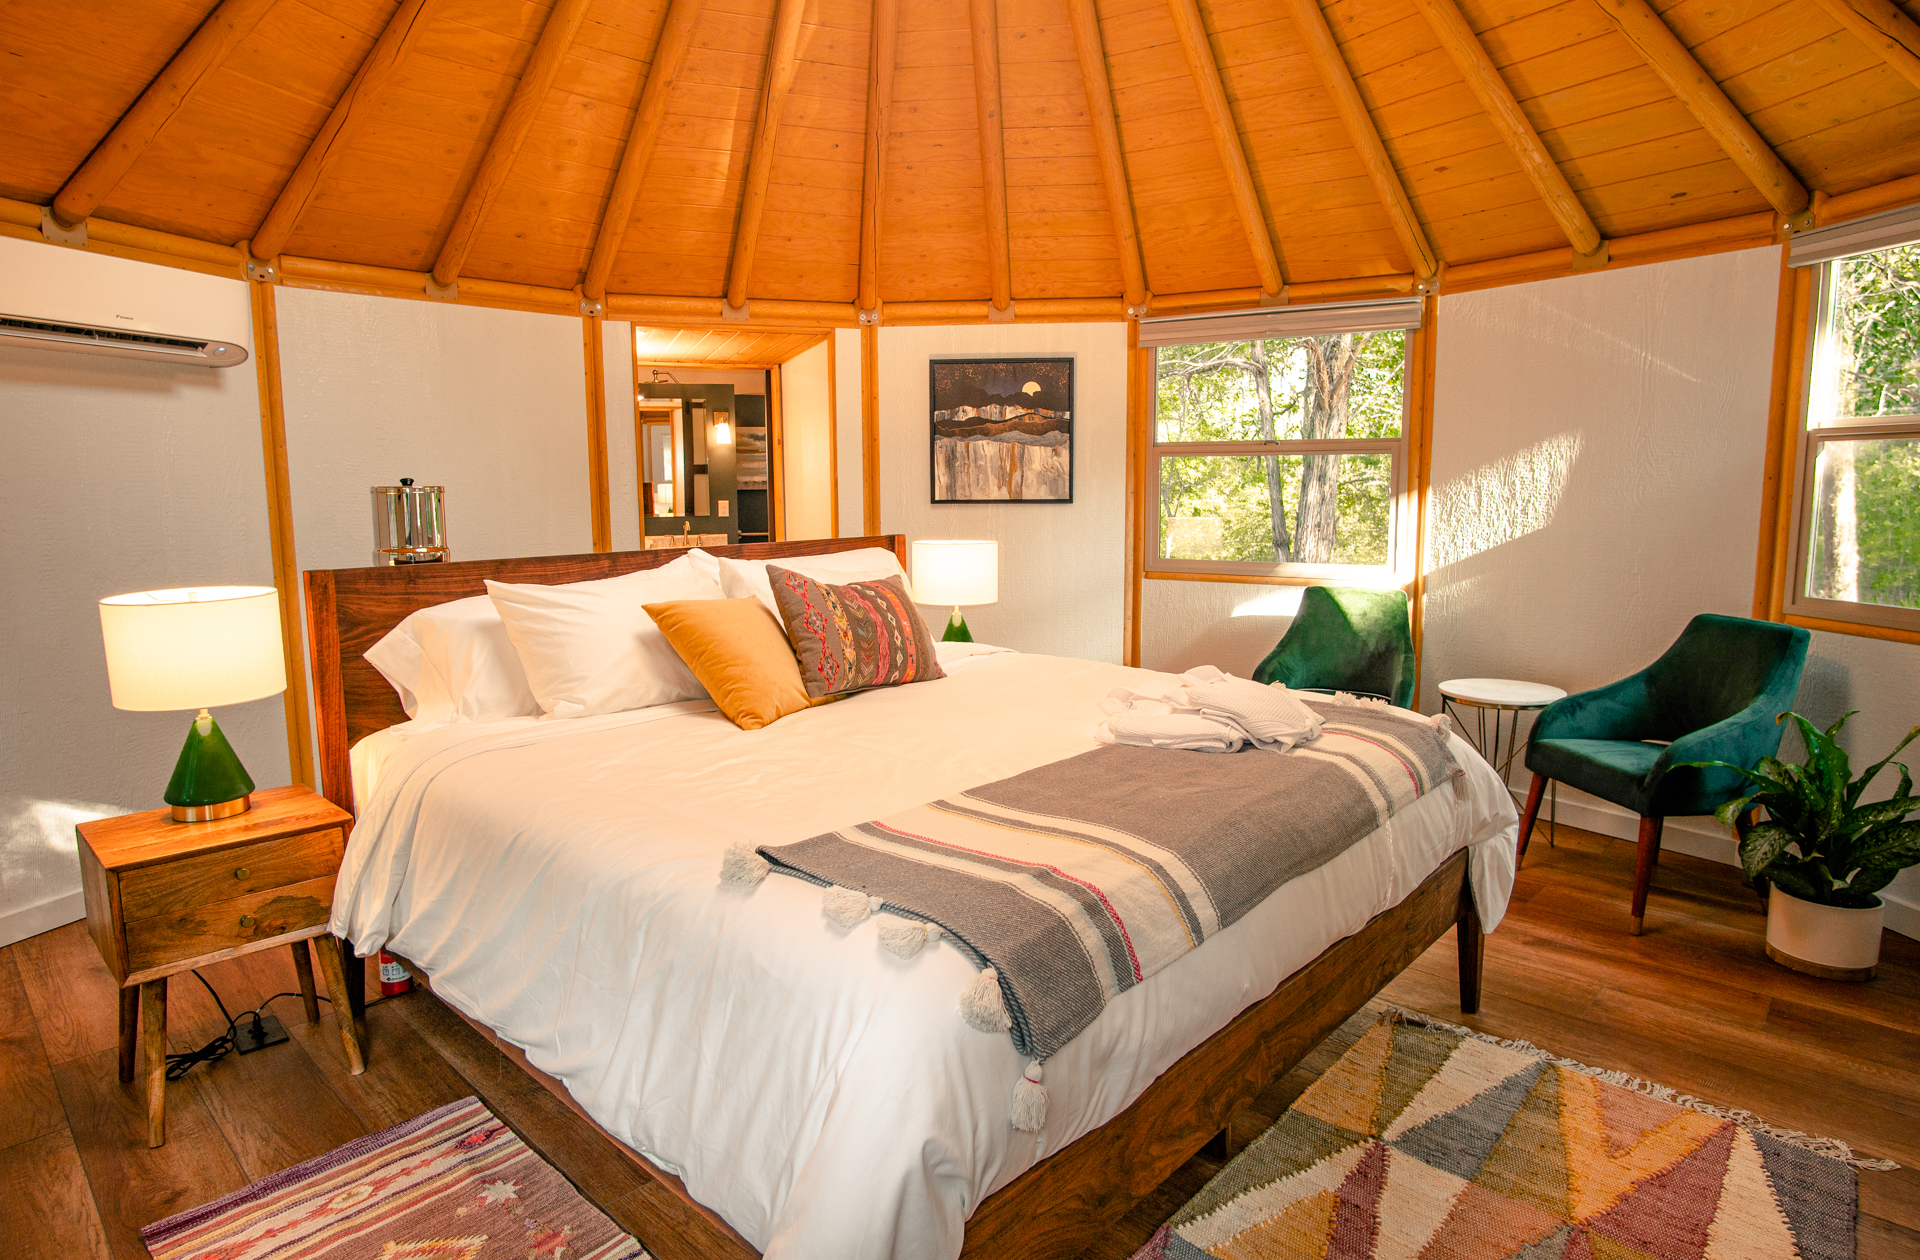 Bohemian bedroom of luxury yurt cabin in Bastrop, TX